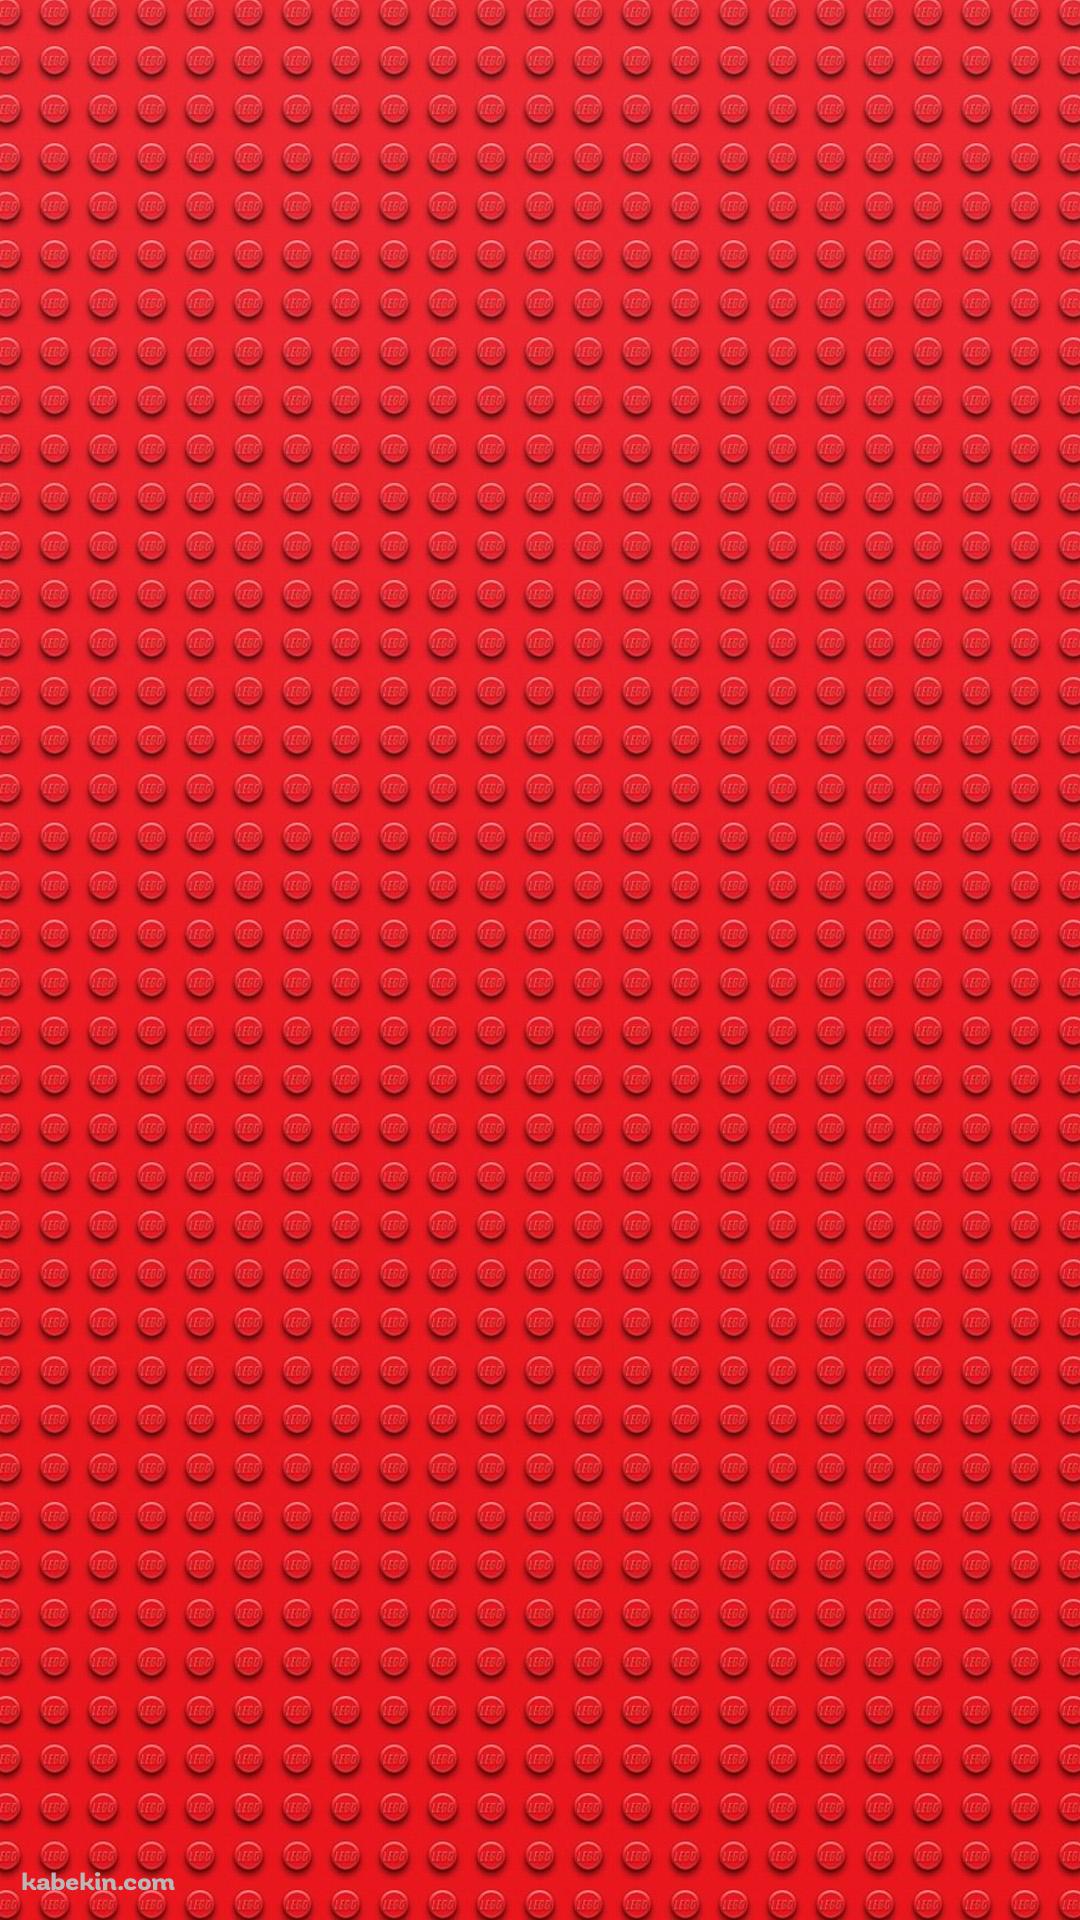 赤 レゴブロックのandroid壁紙 1080 X 19 壁紙キングダム スマホ版